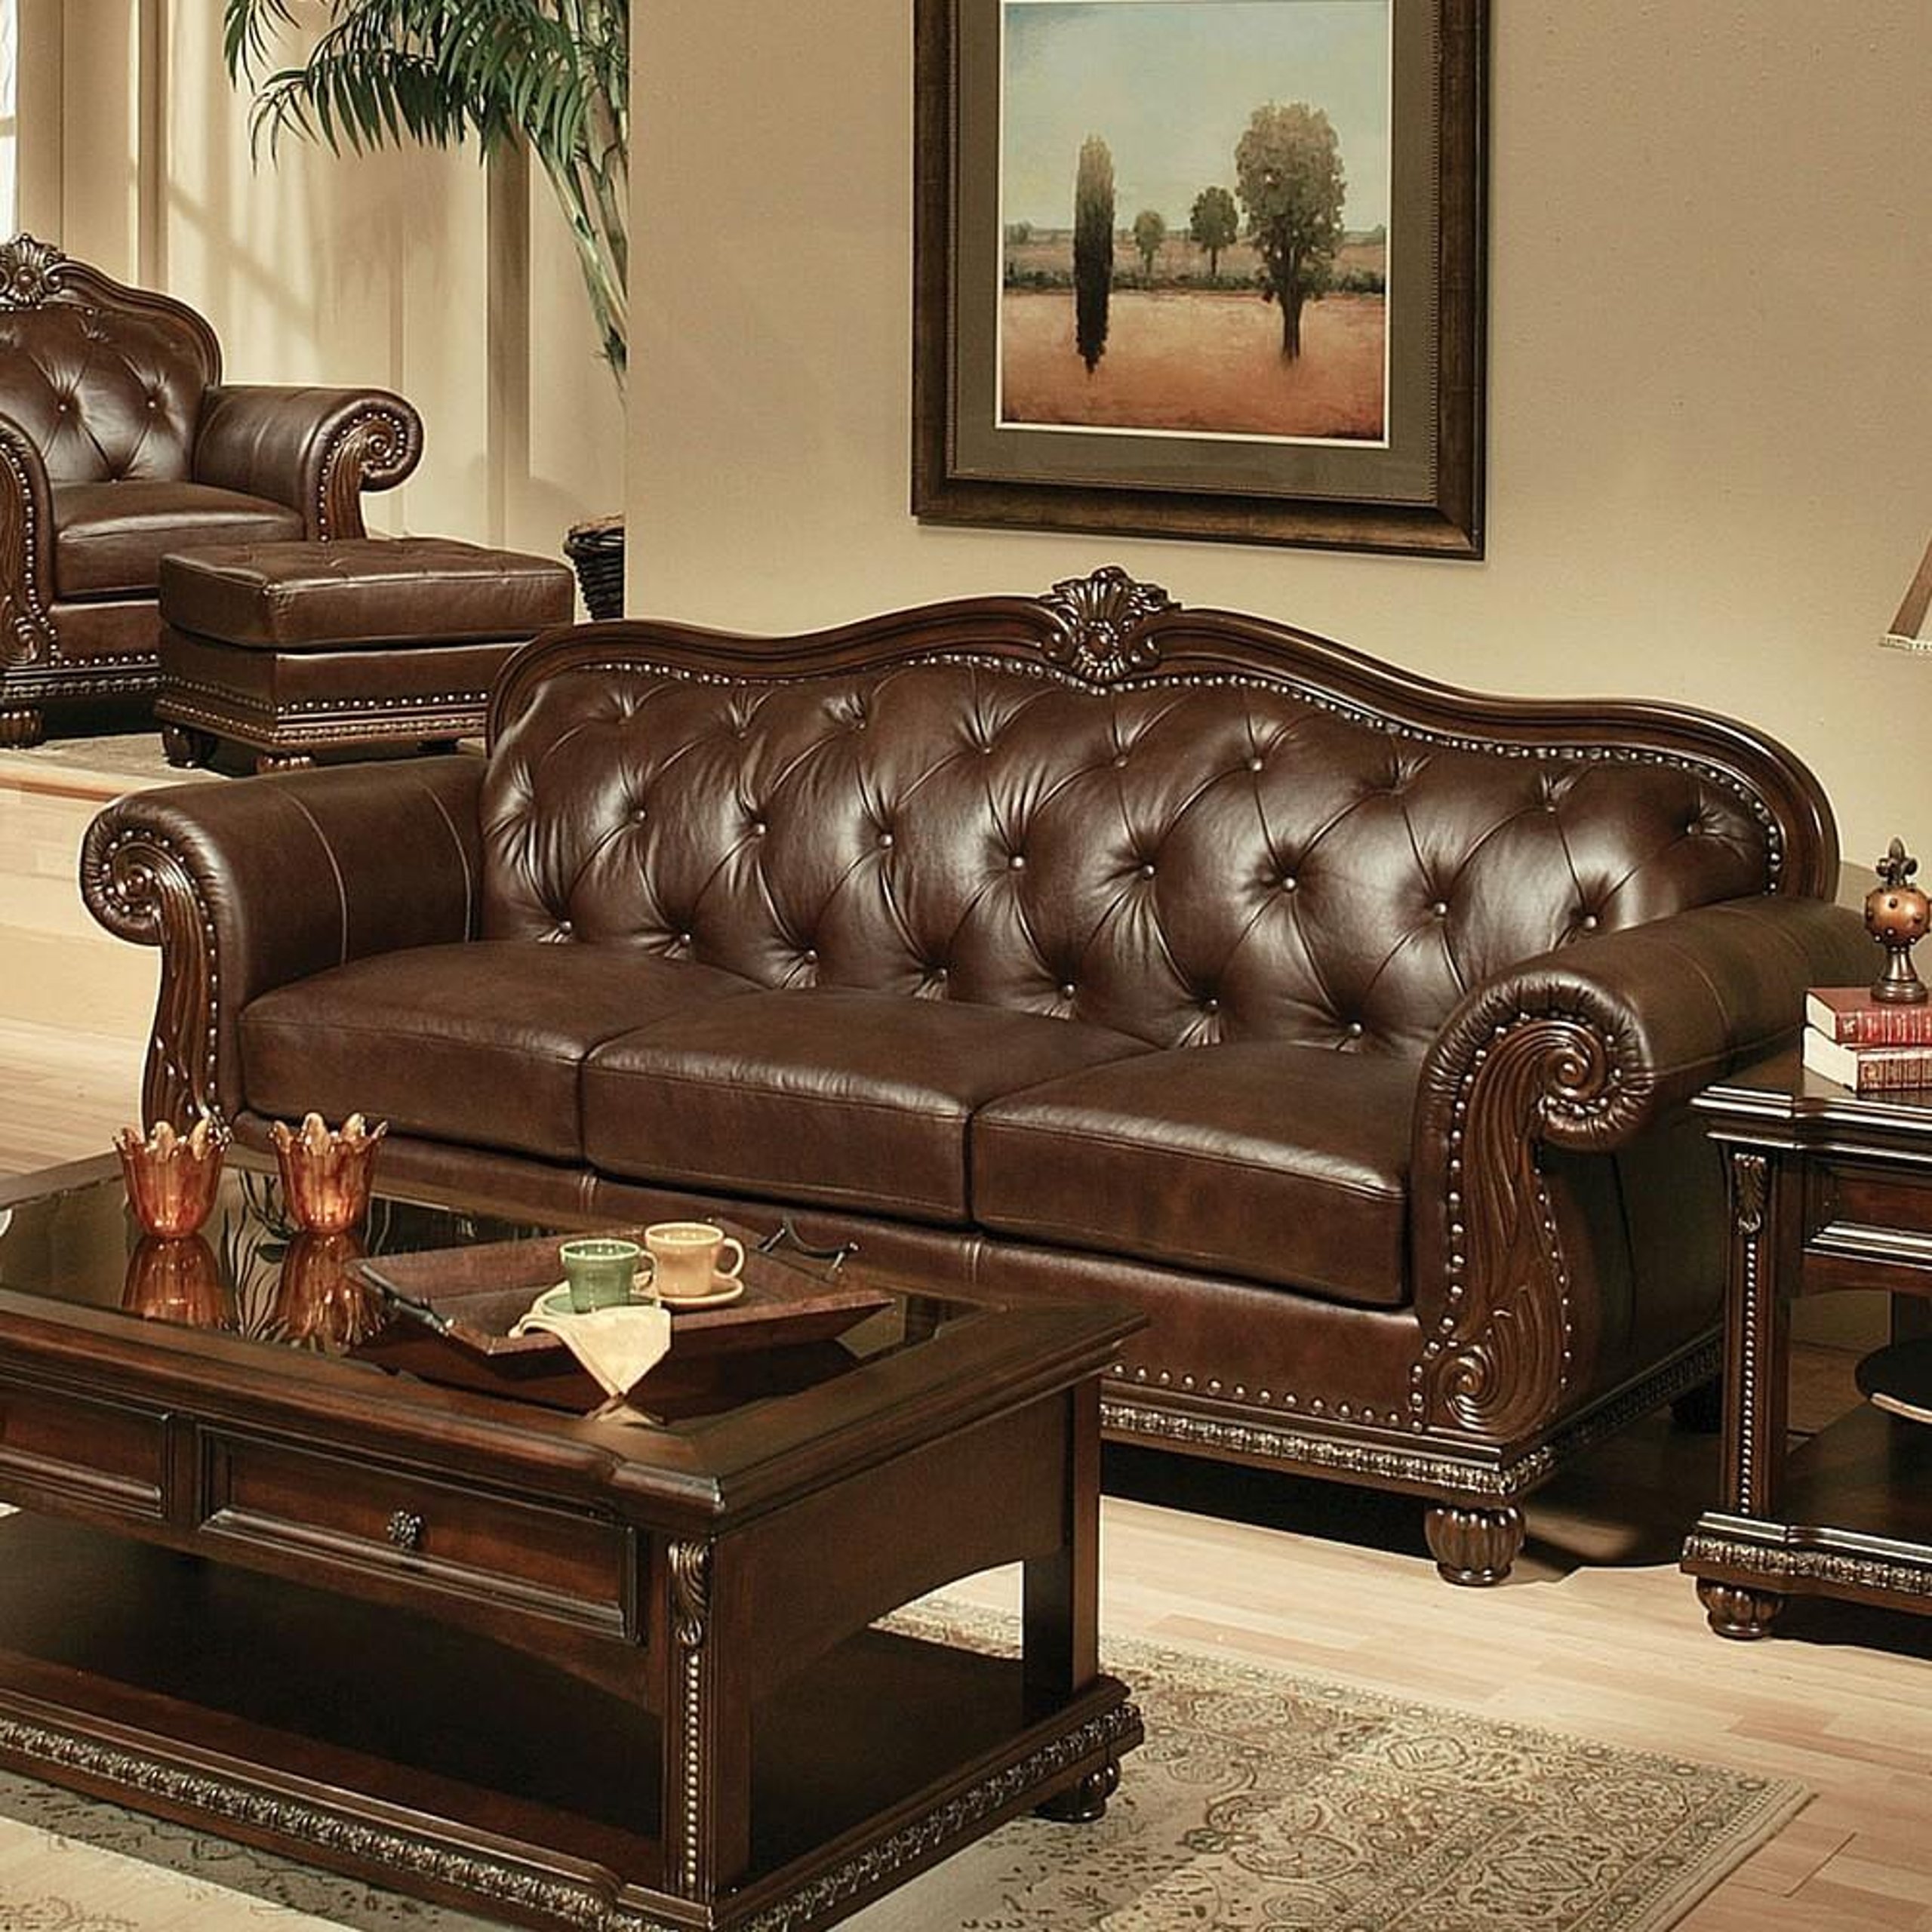 Мебель кожаные диваны. Кожаная мягкая мебель. Классический кожаный диван. Элитная кожаная мебель. Итальянские кожаные диваны.